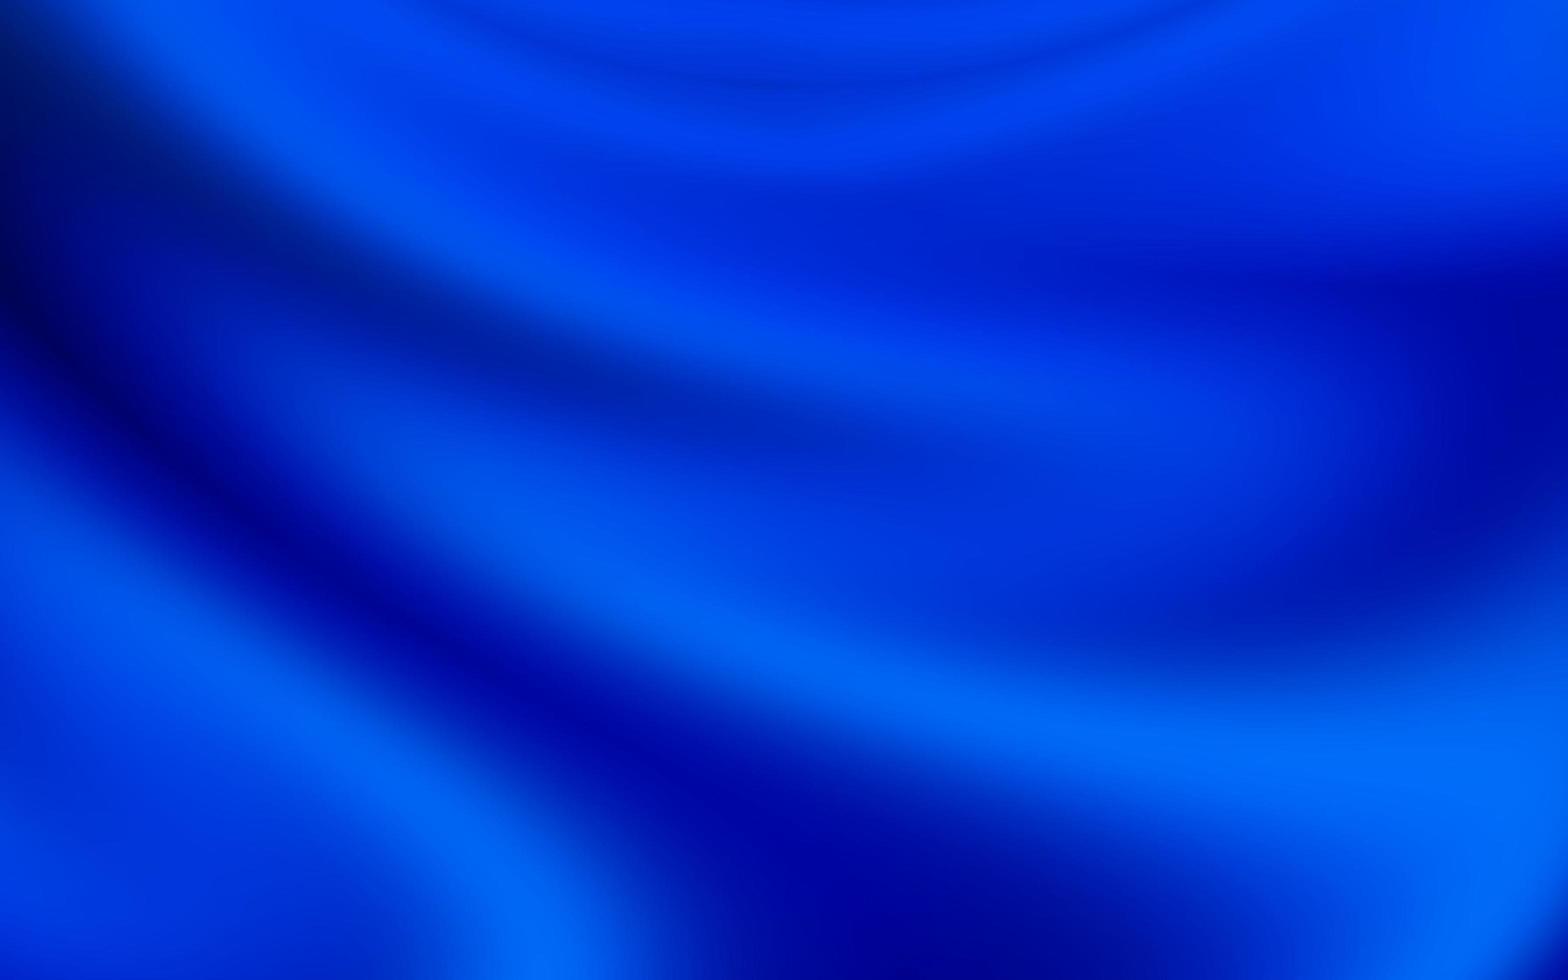 lujo azul antecedentes con seda o ondulado doblez texturas suave seda textura con arrugas y pliegues tela. elegante ondulado cubierto pliegues de tela suave pliegues ilustración antecedentes. foto